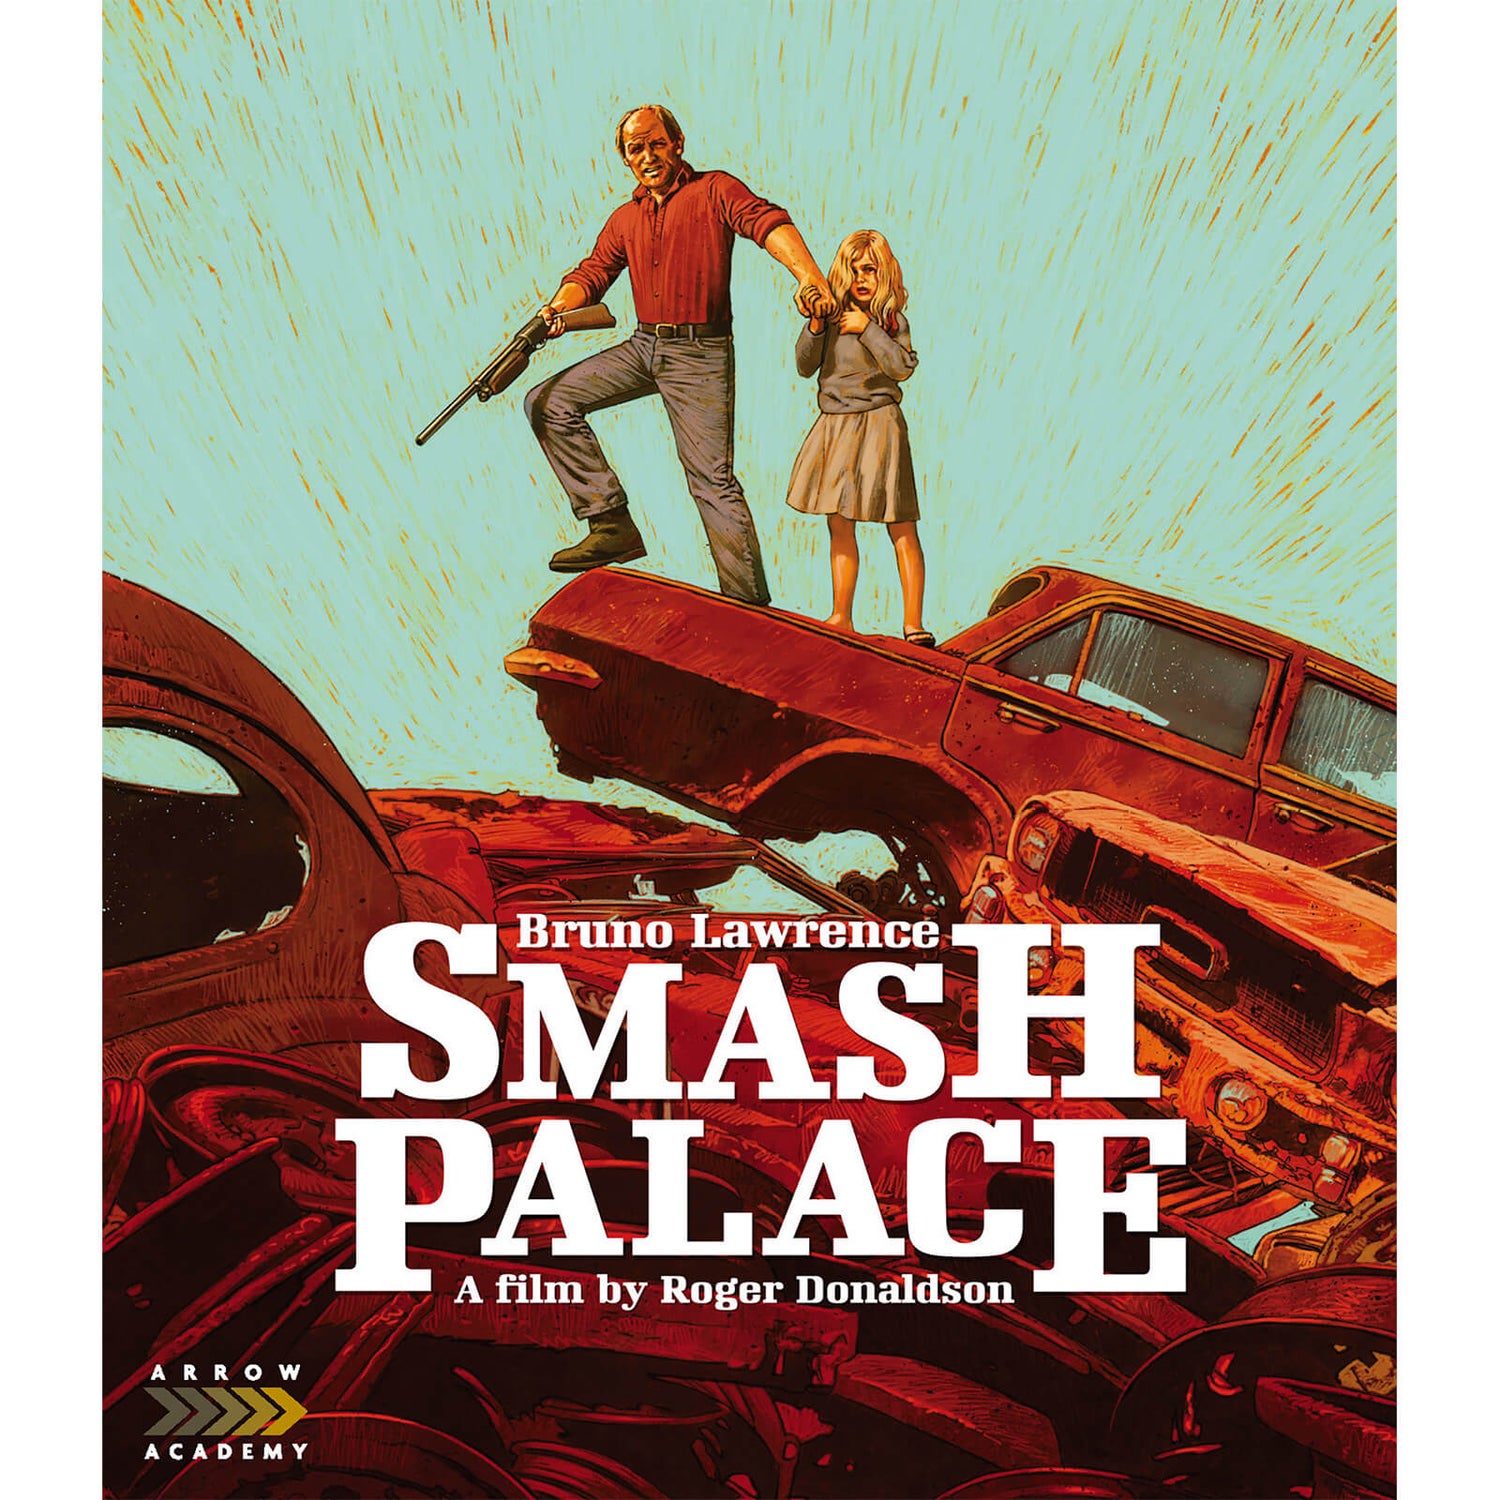 Smash Palace Blu-ray